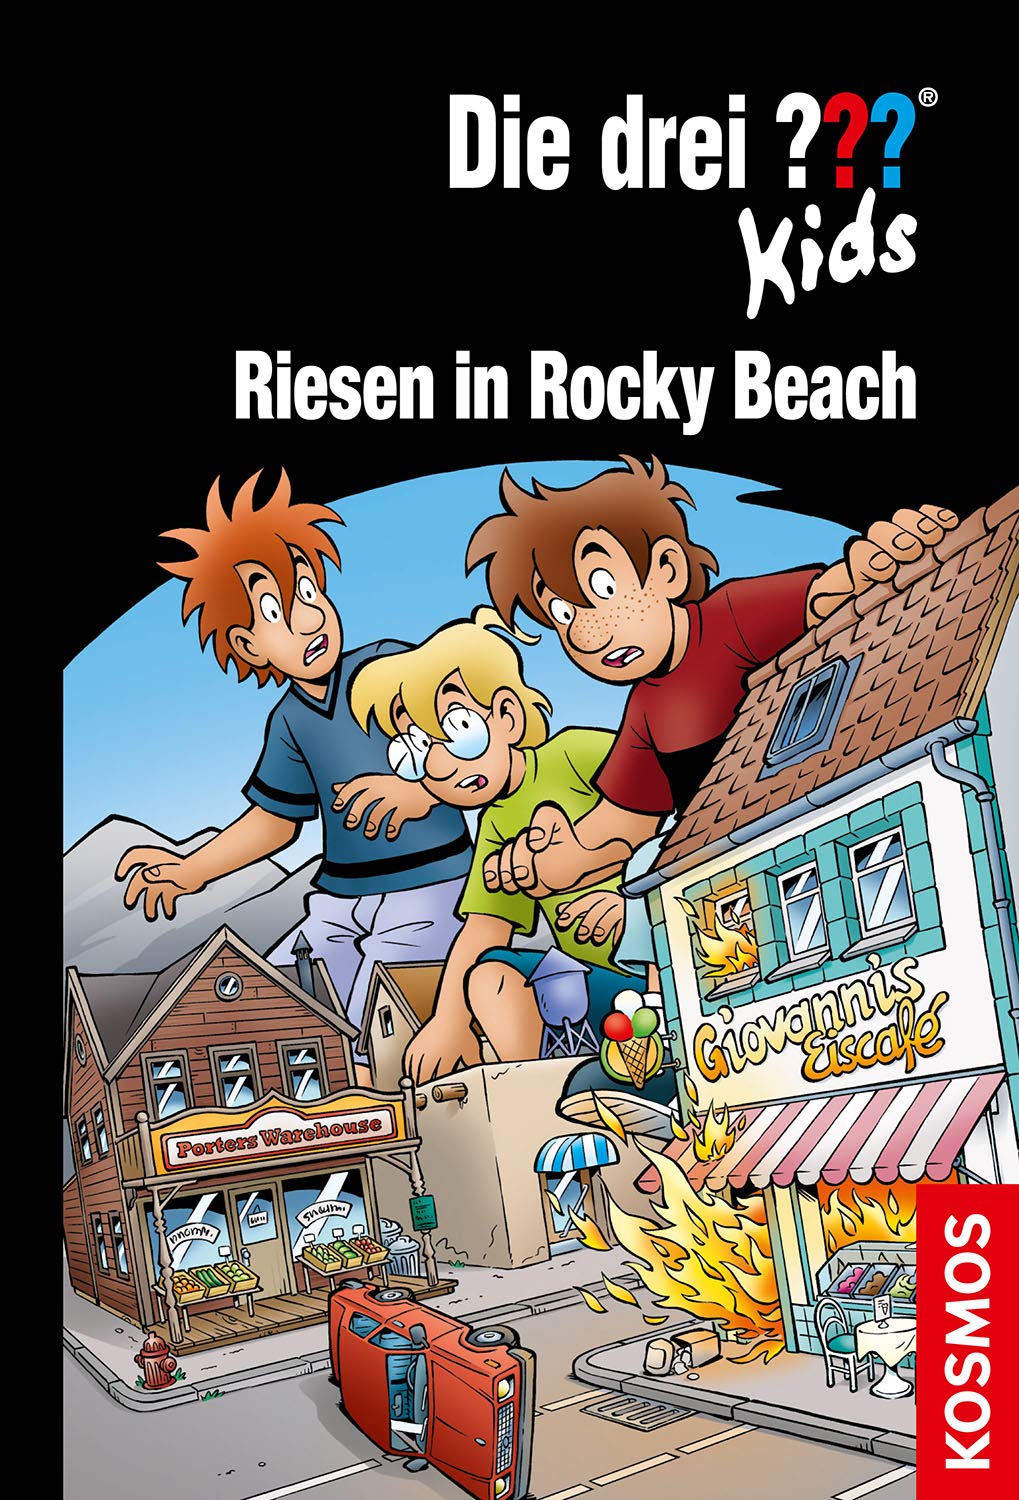 Die drei kids? :  Riesen in rocky beach